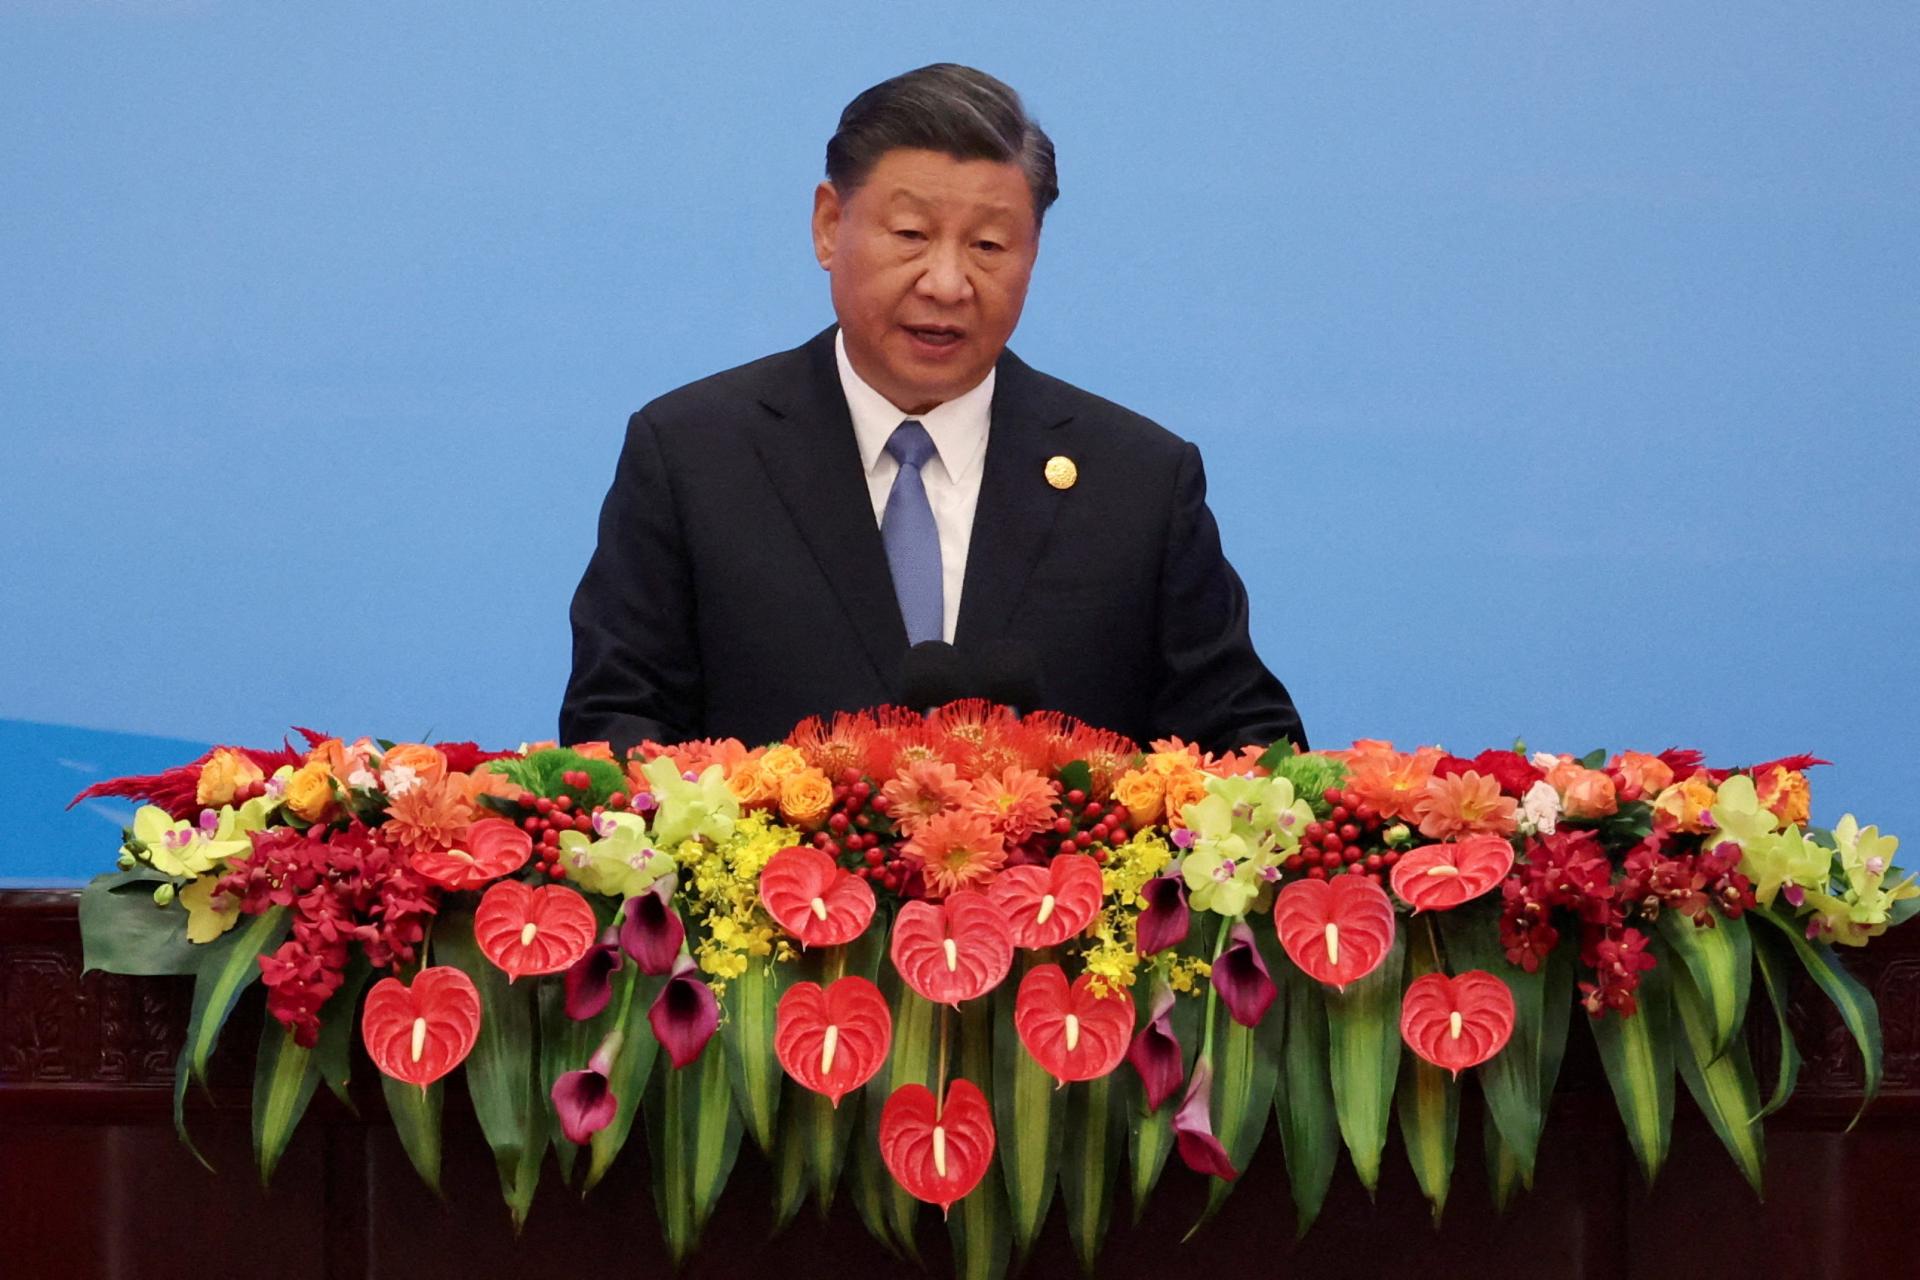 Čínsky prezident upozornil na kľúčovú úlohu žien v oblasti rodiny i rozvoja Číny